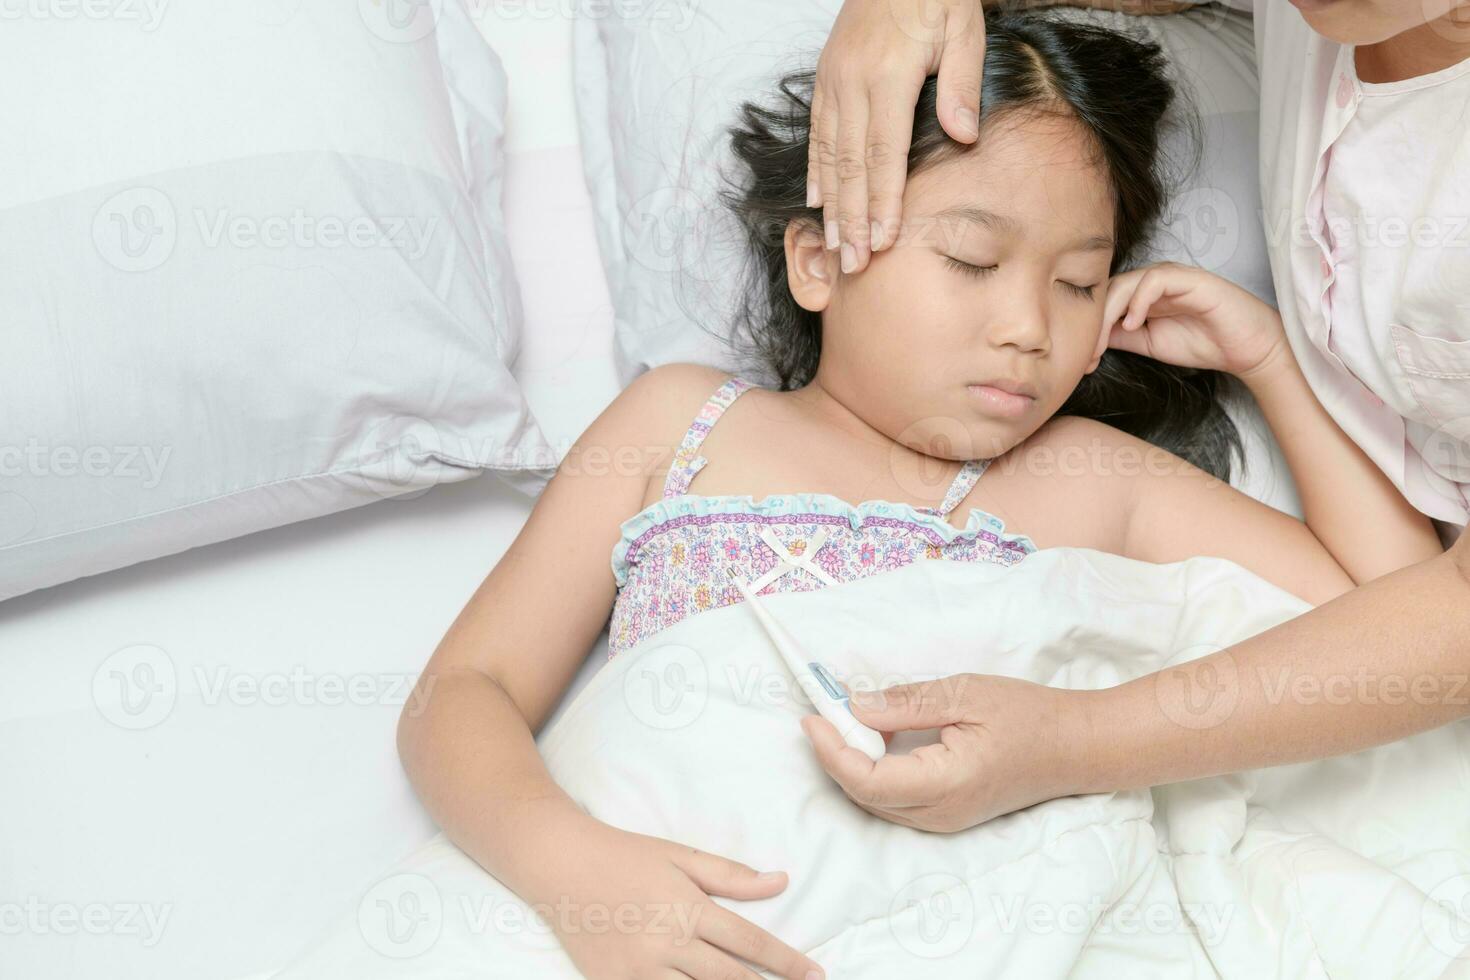 ziek kind met hoog koorts houdende in bed foto